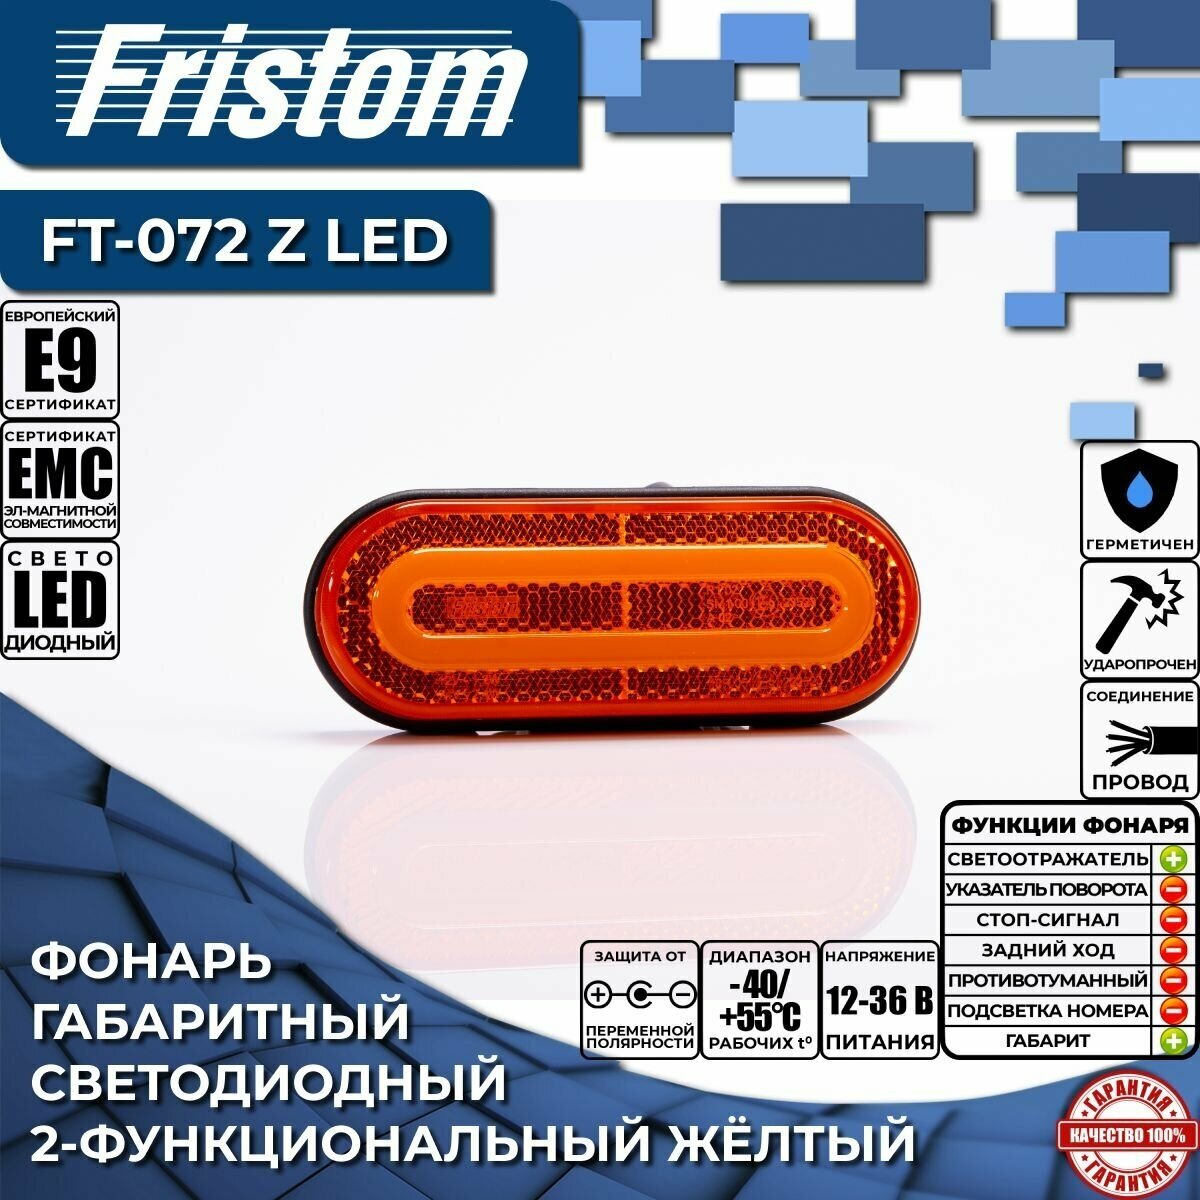 Фонарь габаритный Fristom FT-072 Z LED светодиодный желтый (1 шт.)